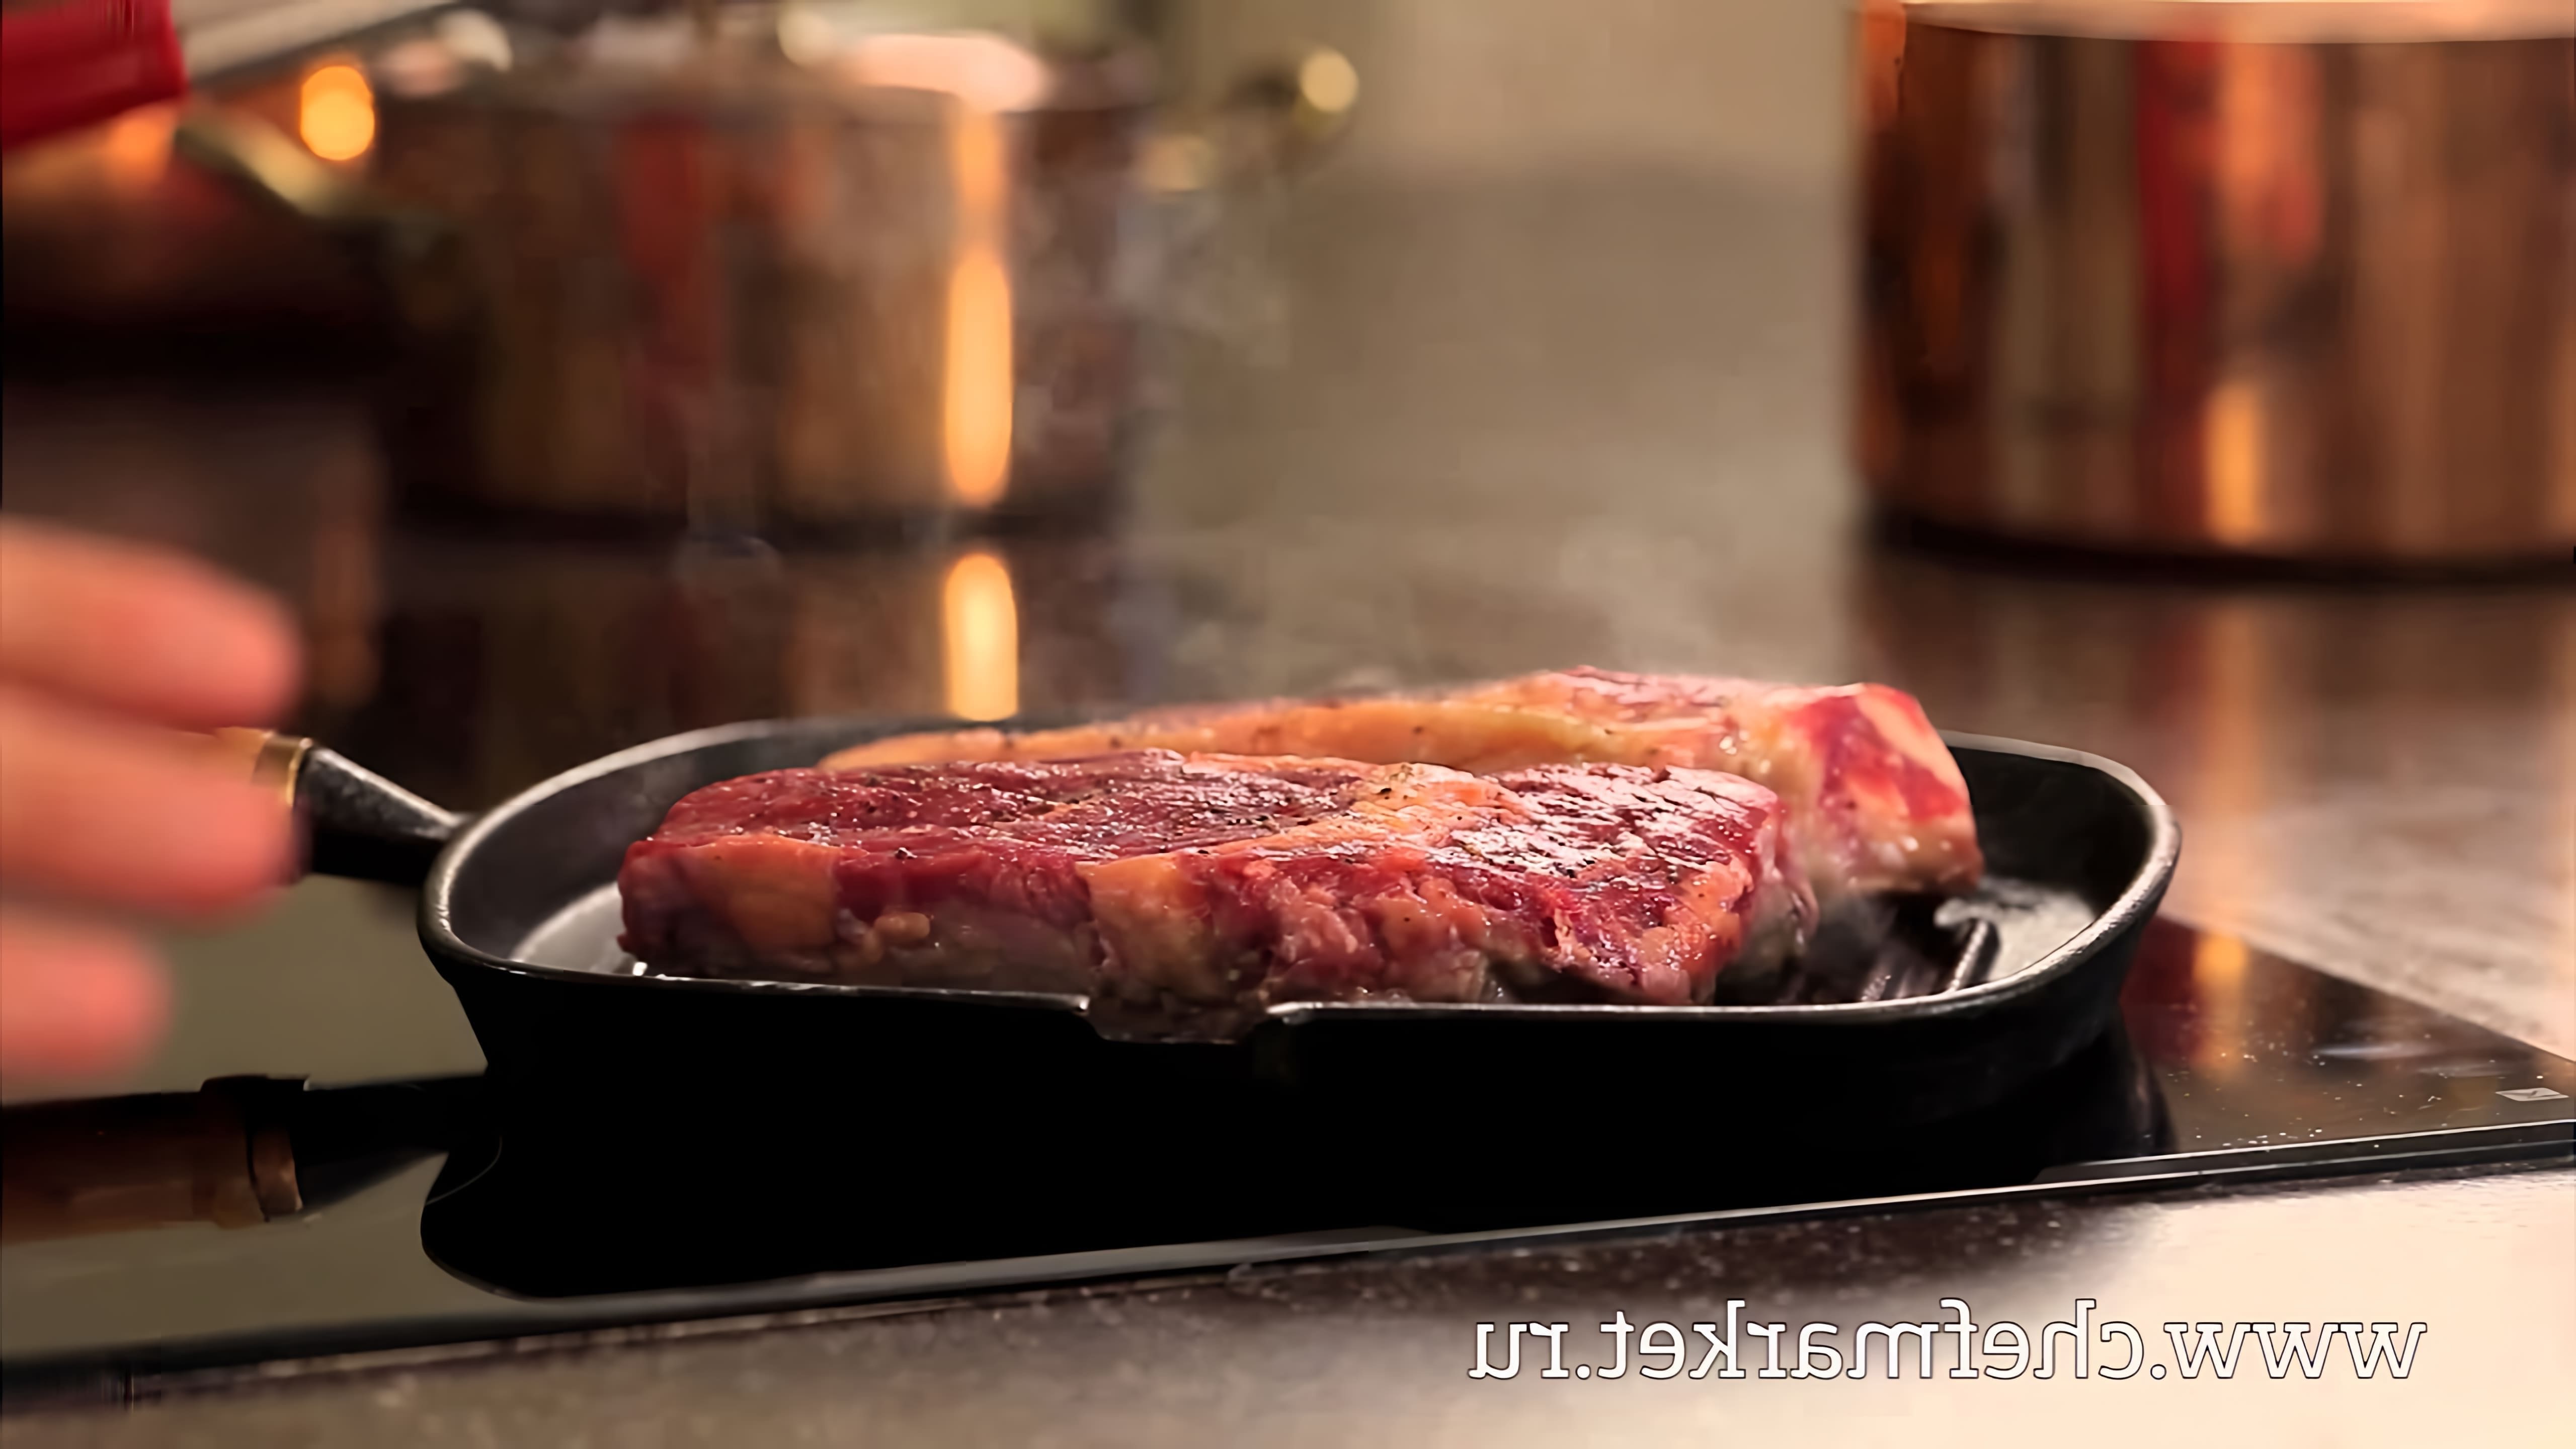 В этом видео демонстрируется, как правильно жарить стейк из говядины